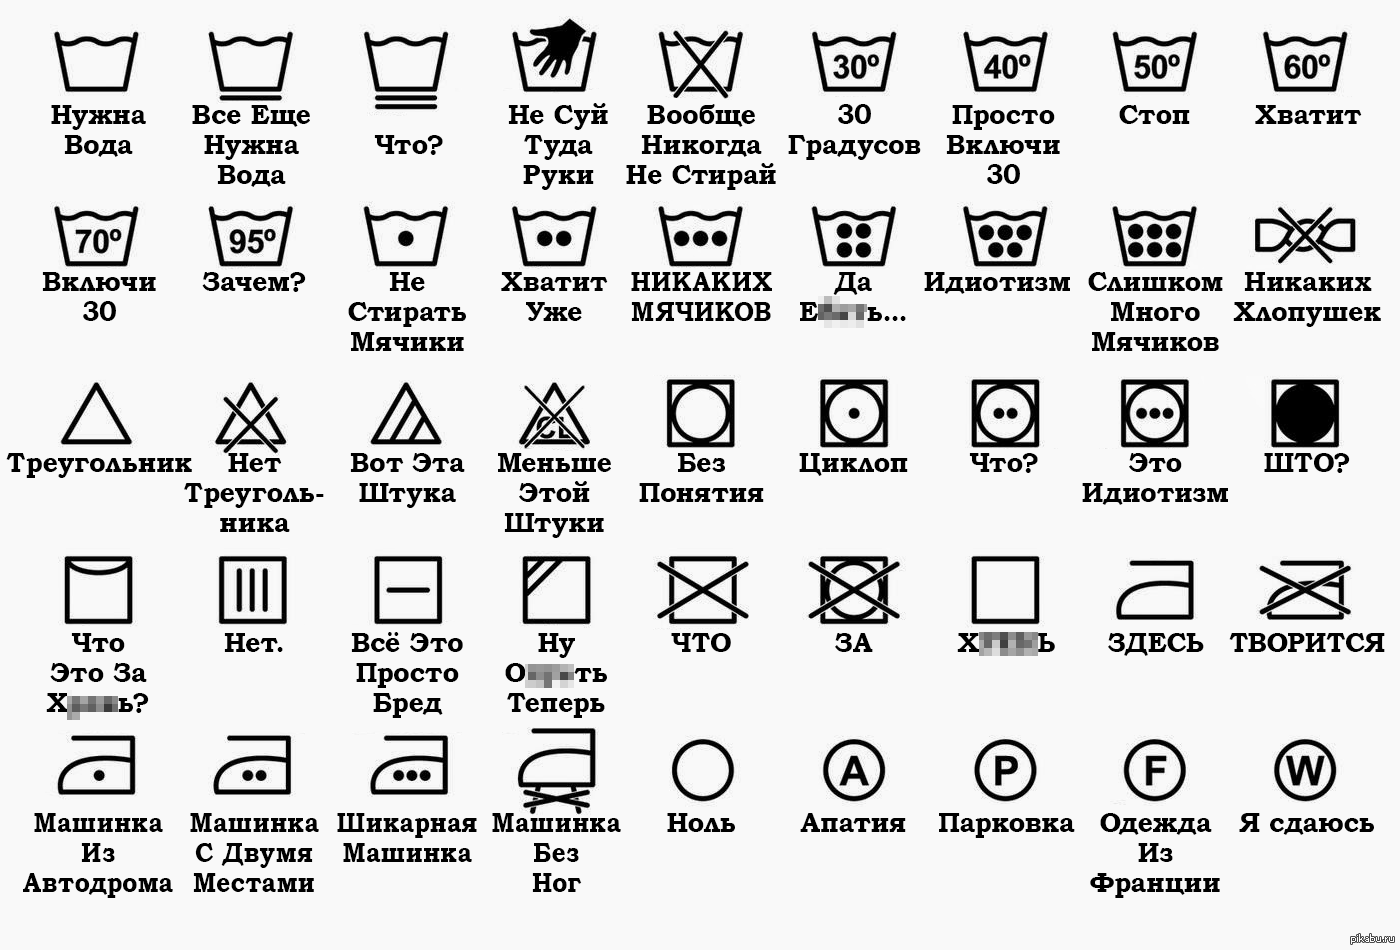 Значки на стиральной машине: что означают, какие обозначение есть и как правильно настроить